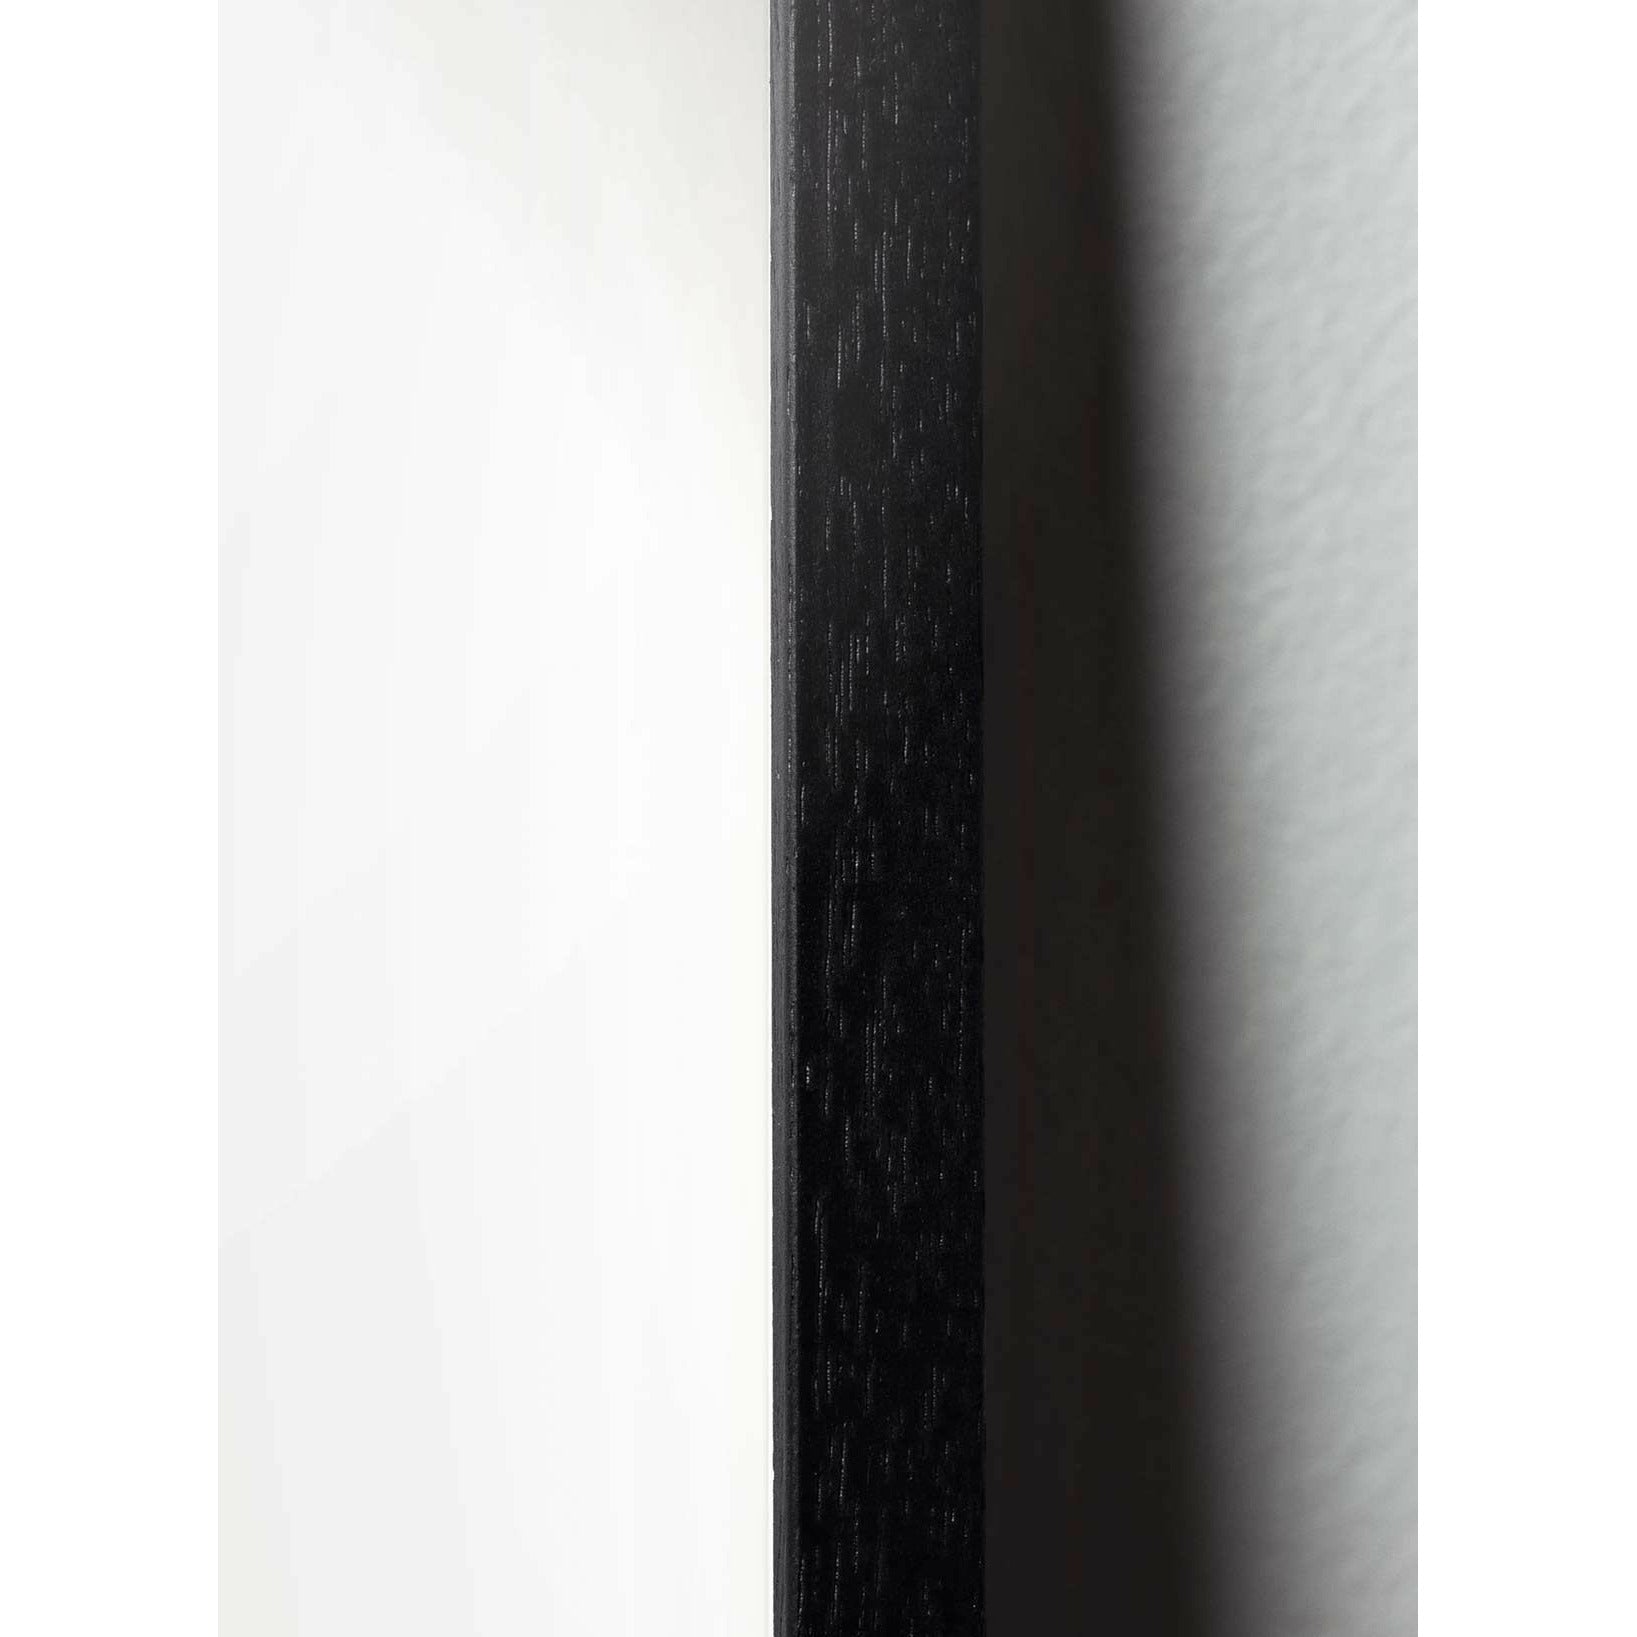 Poster della linea di uova di prima cosa, cornice in legno laccato nero A5, sfondo bianco